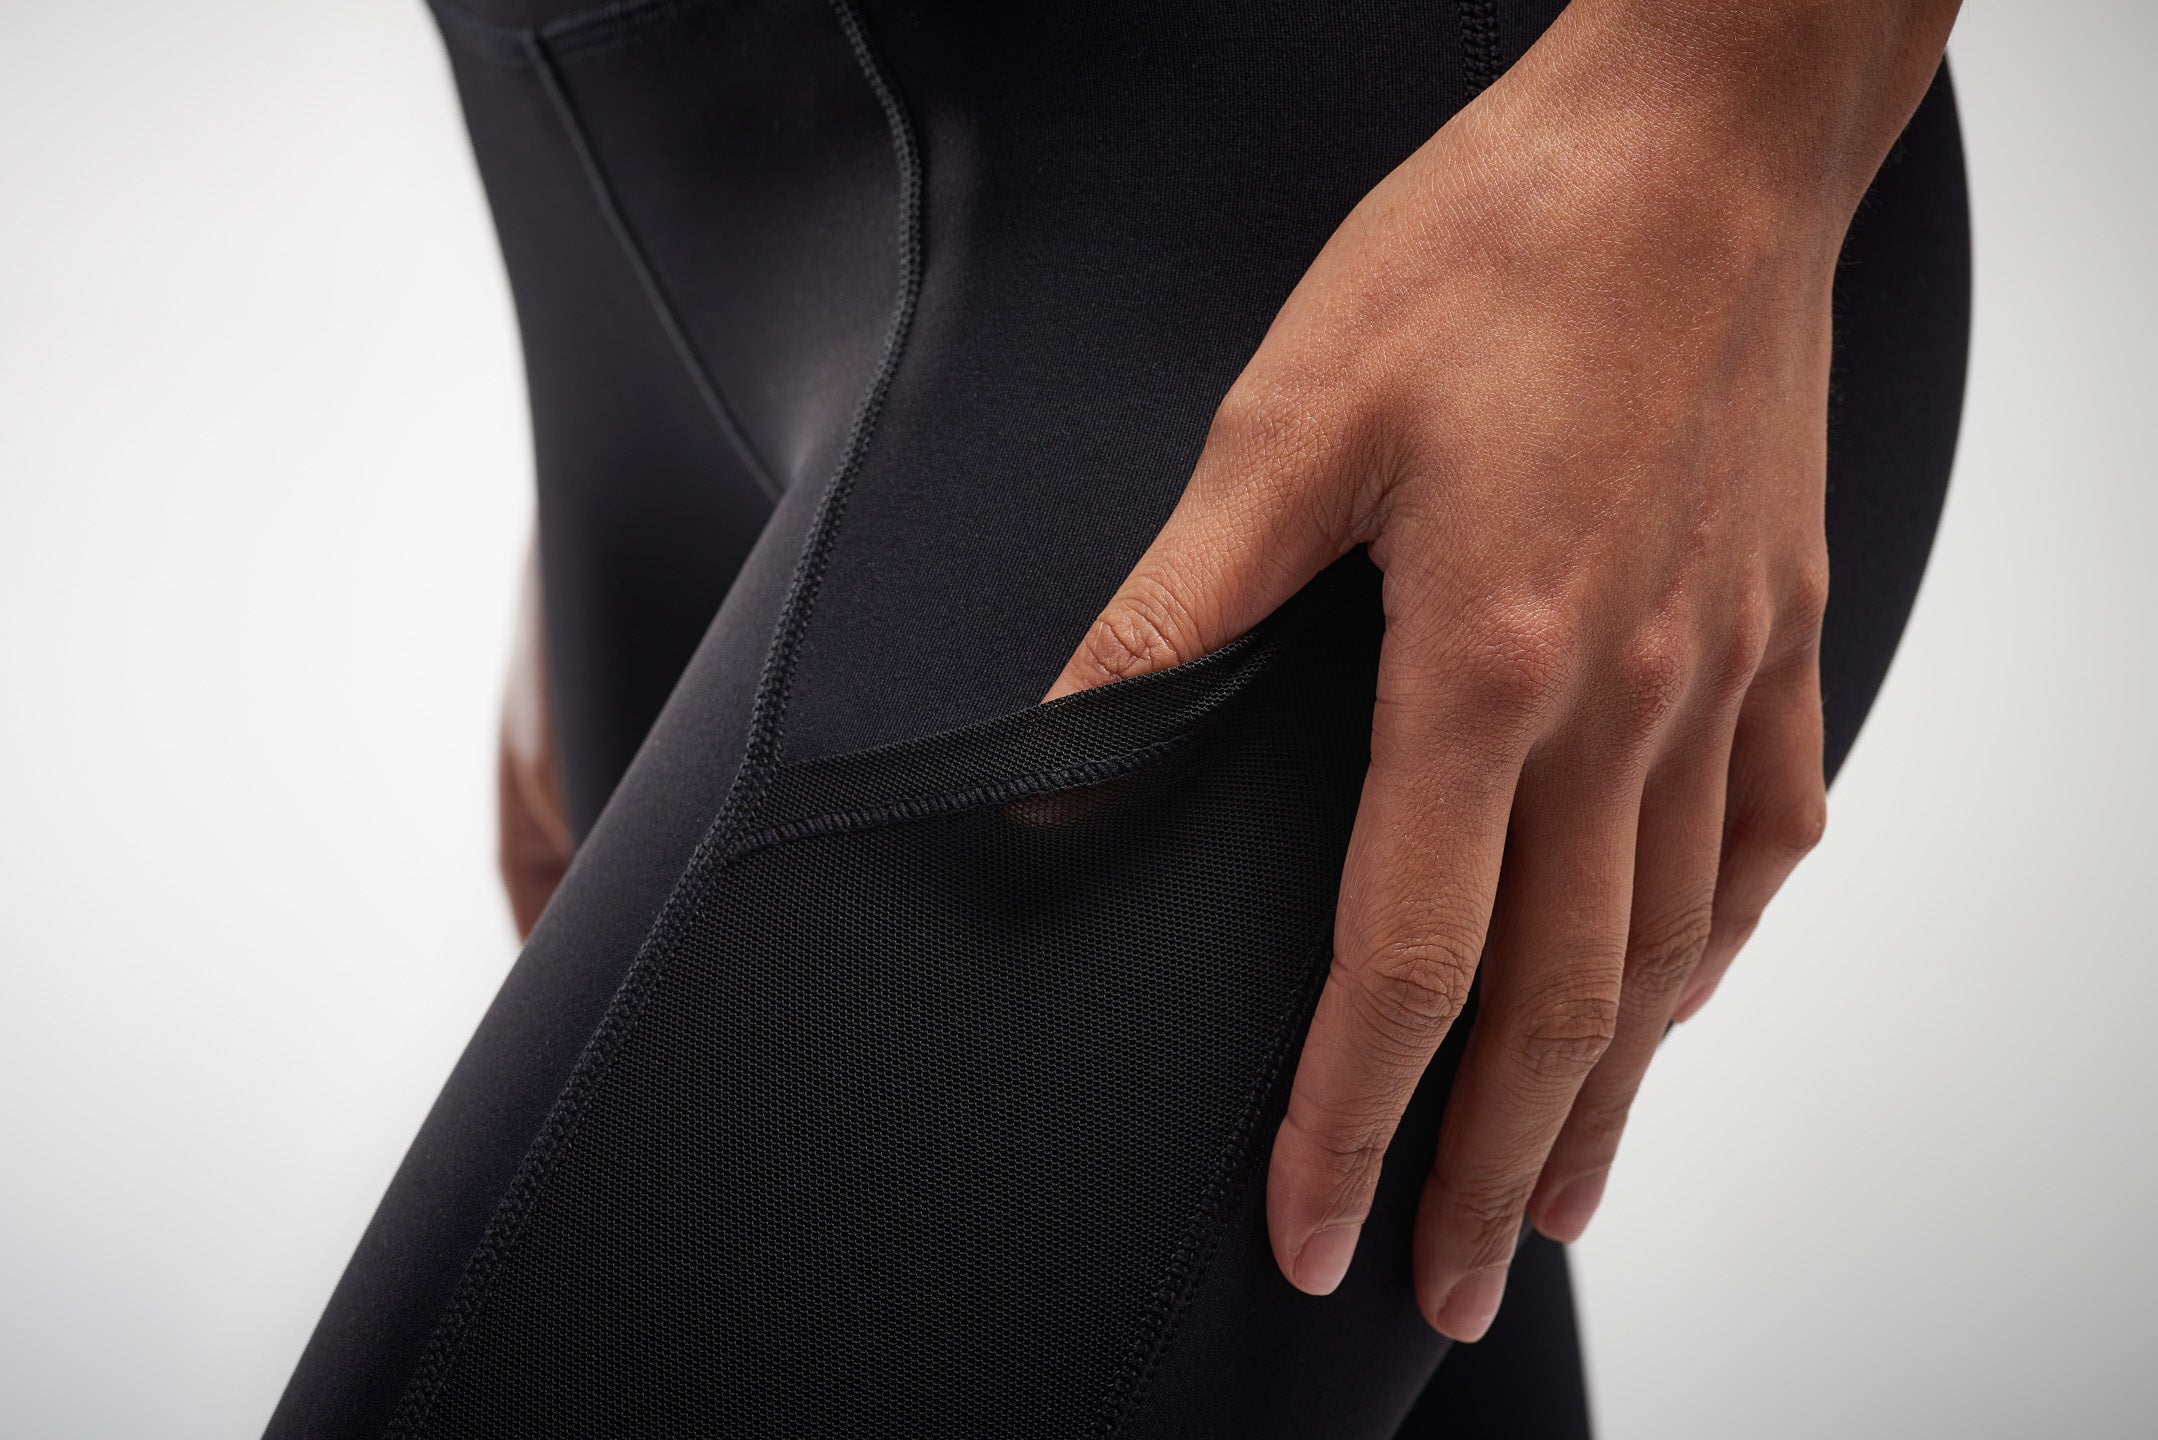 Pocket detail of black mesh leggings